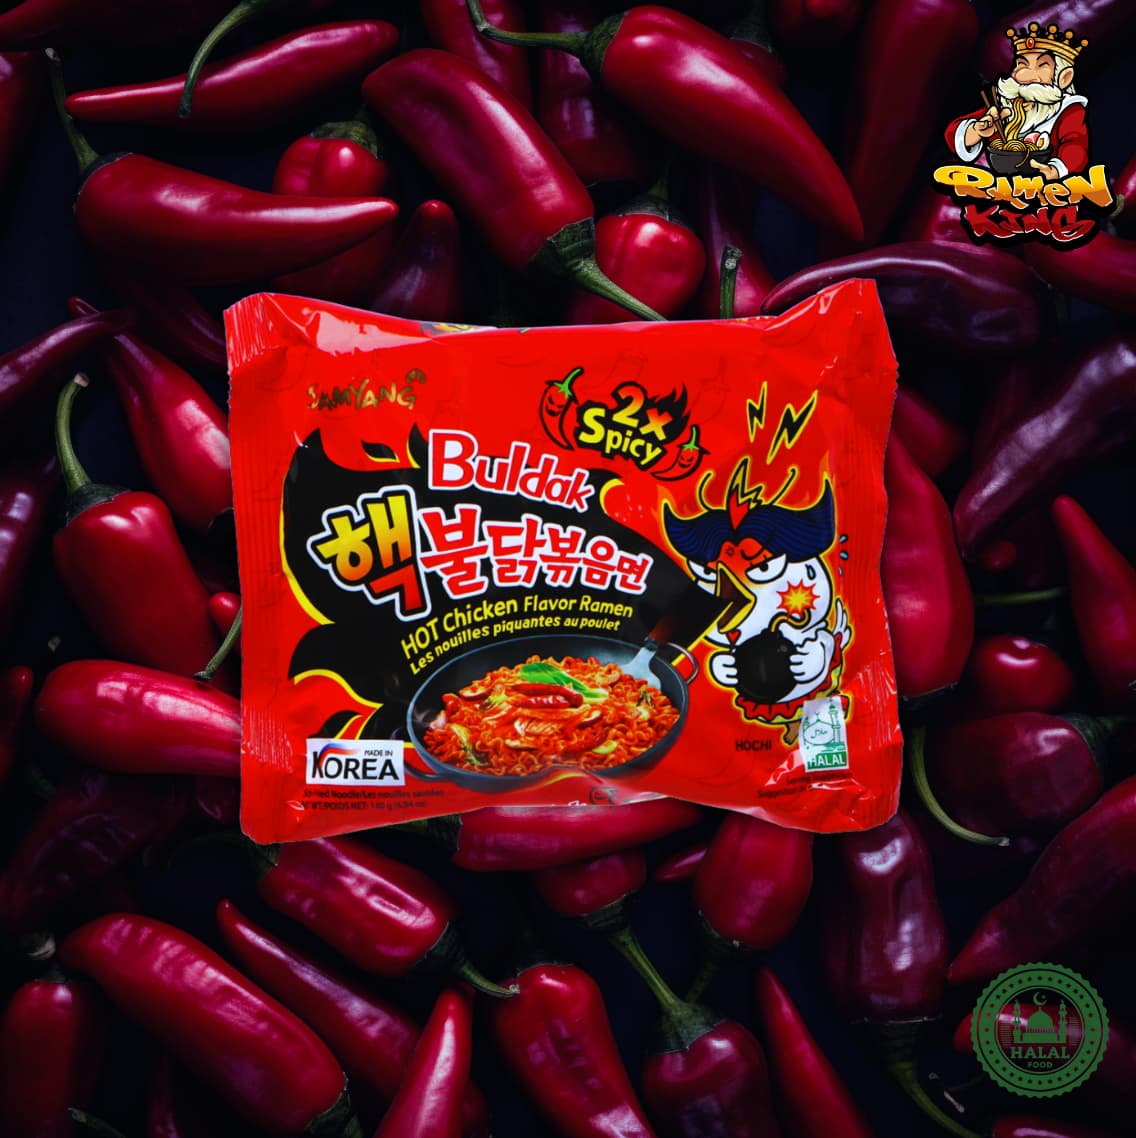 Ein ungeöffnetes Paket von Buldak 2x Spicy Ramen auf einem roten Hintergrund. Die Verpackung hat das Bild eines cartoonisierten Huhns, das Feuer spuckt, und koreanische Schriftzeichen, die die Schärfe des Produkts betonen.